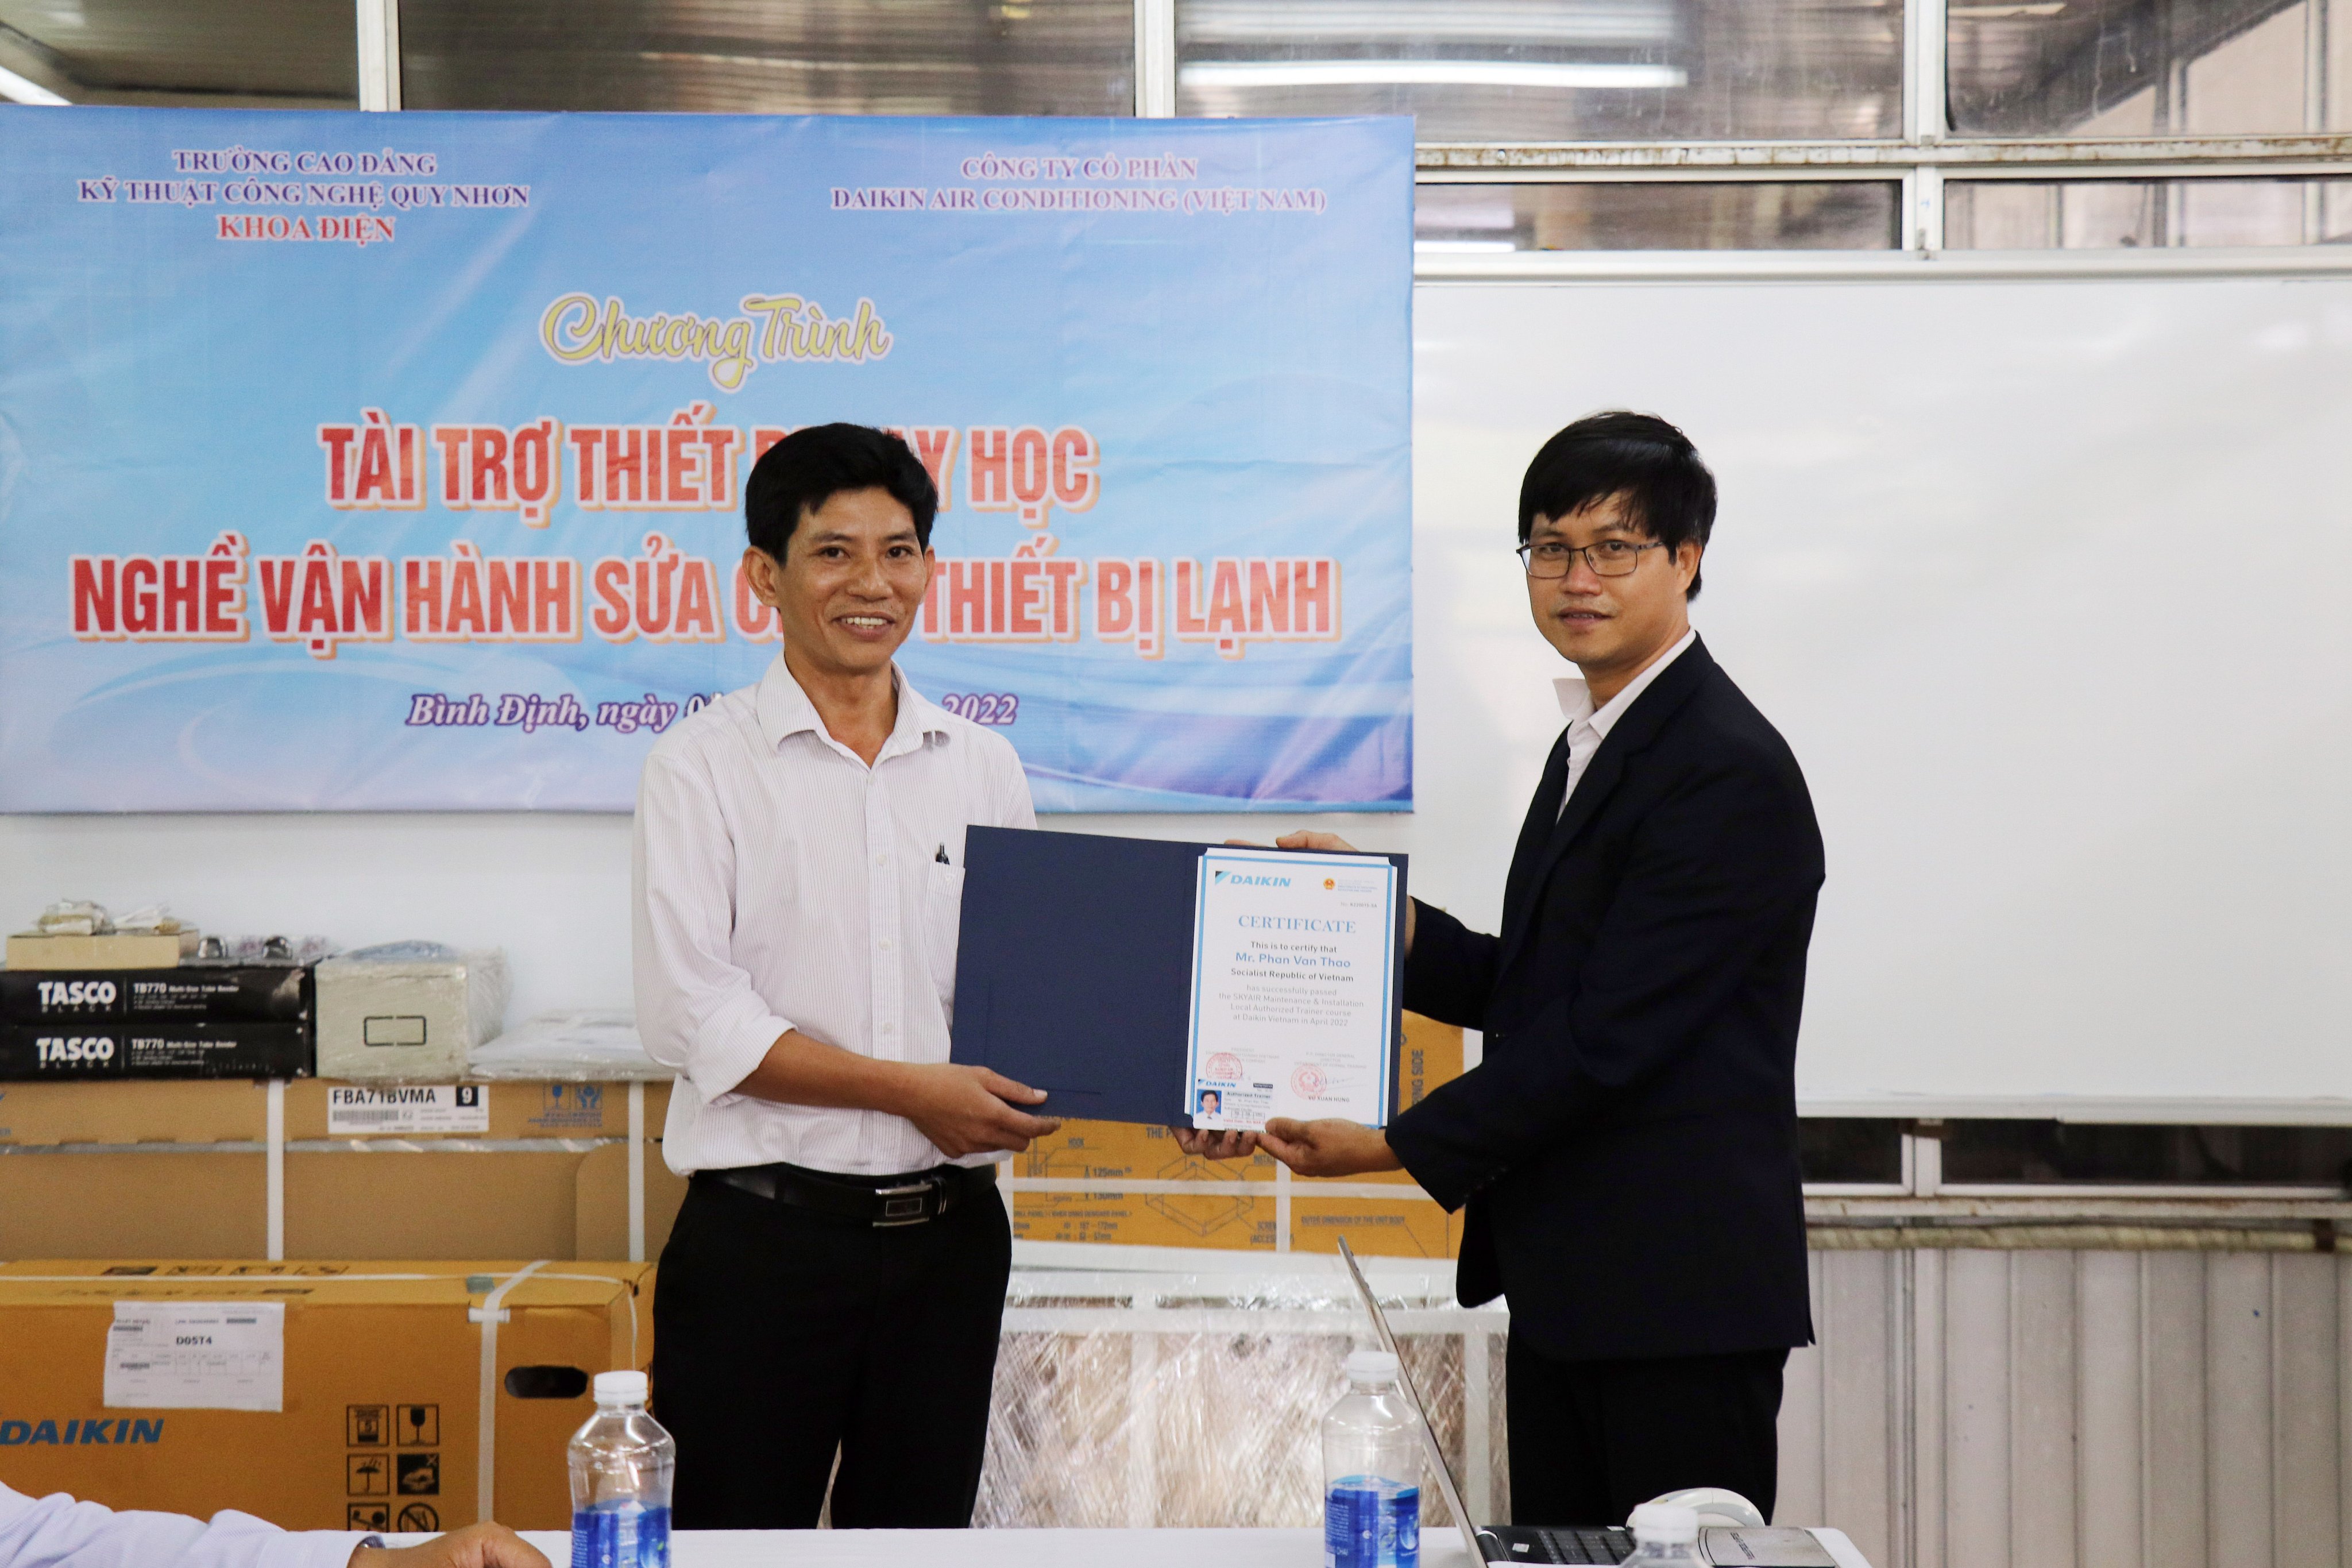 Công ty Daikin Việt Nam tiếp tục tài trợ thiết bị dạy học cho nghề Vận hành, sửa chữa thiết bị lạnh và ủy quyền giảng viên đào tạo tại Trường